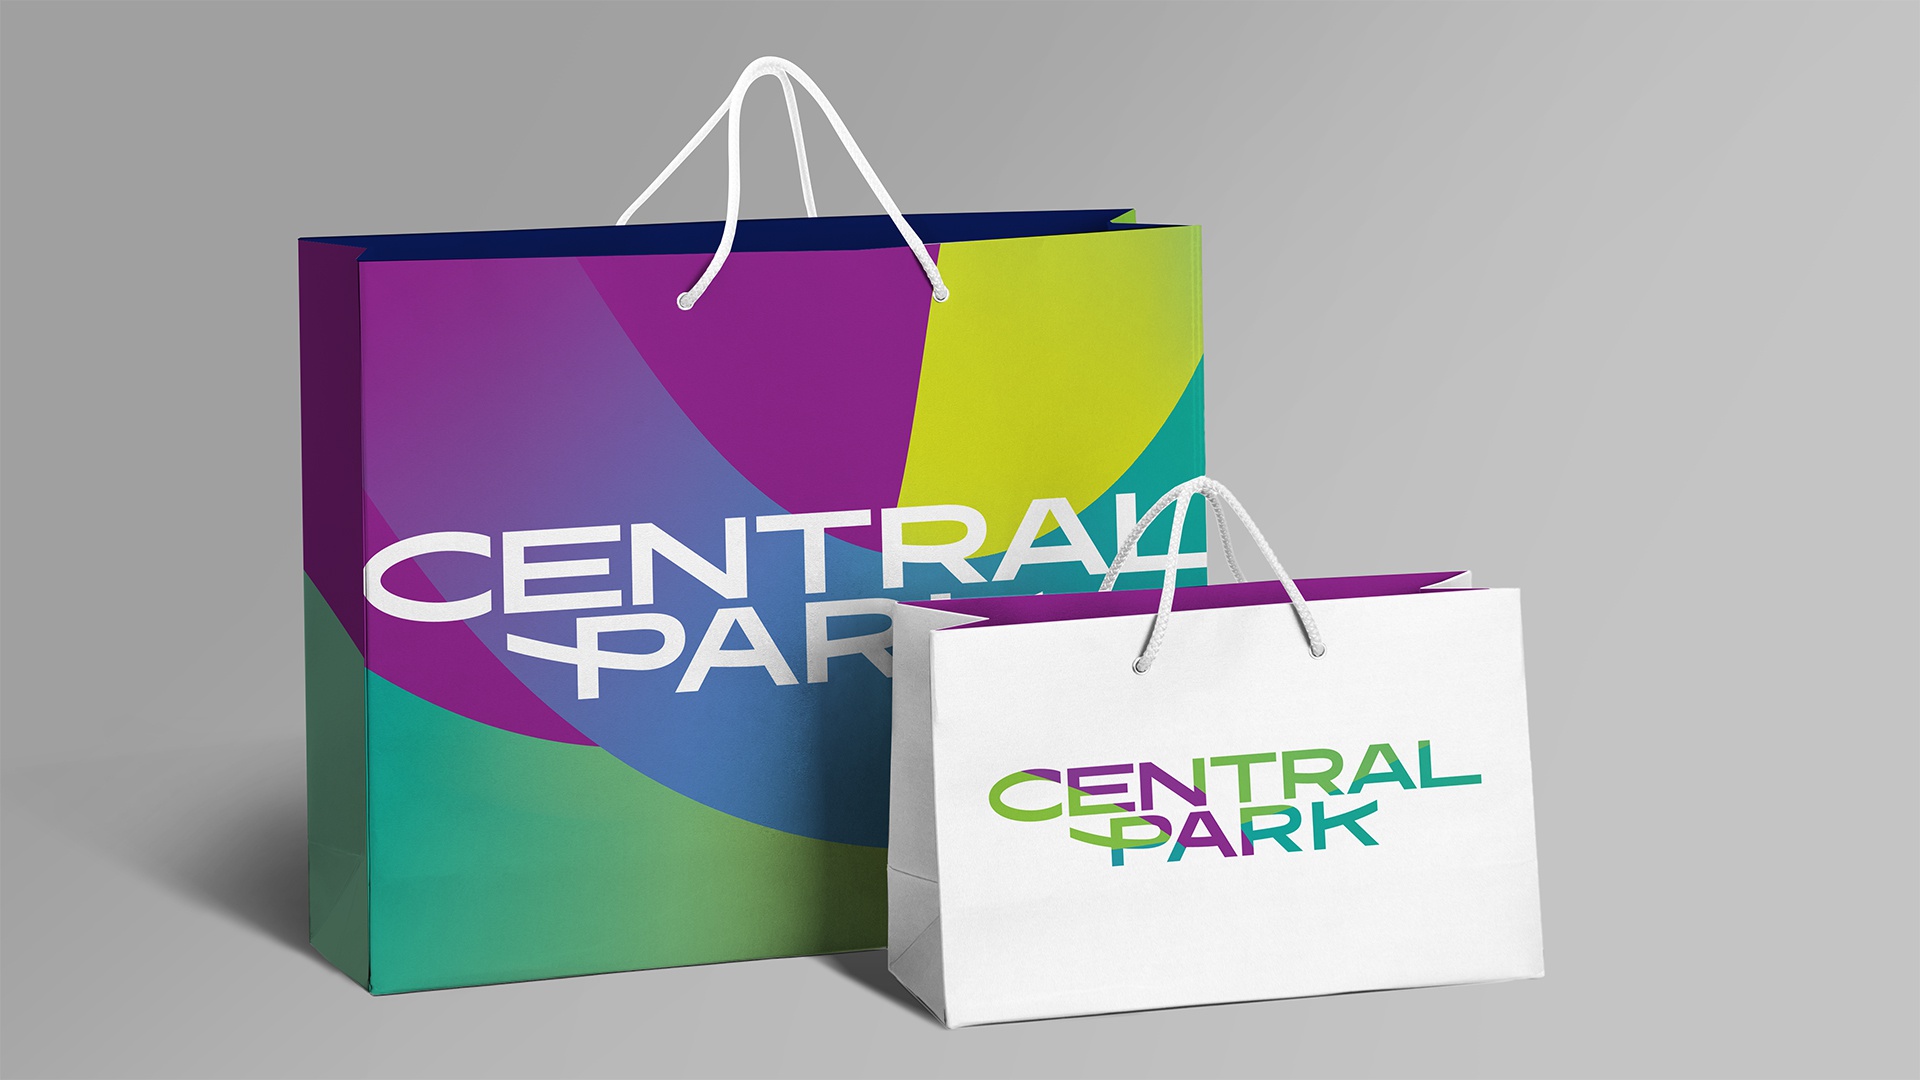 CENTRAL PARK: CENTRAL PARK: Логотип и фирменный стиль (2.1)